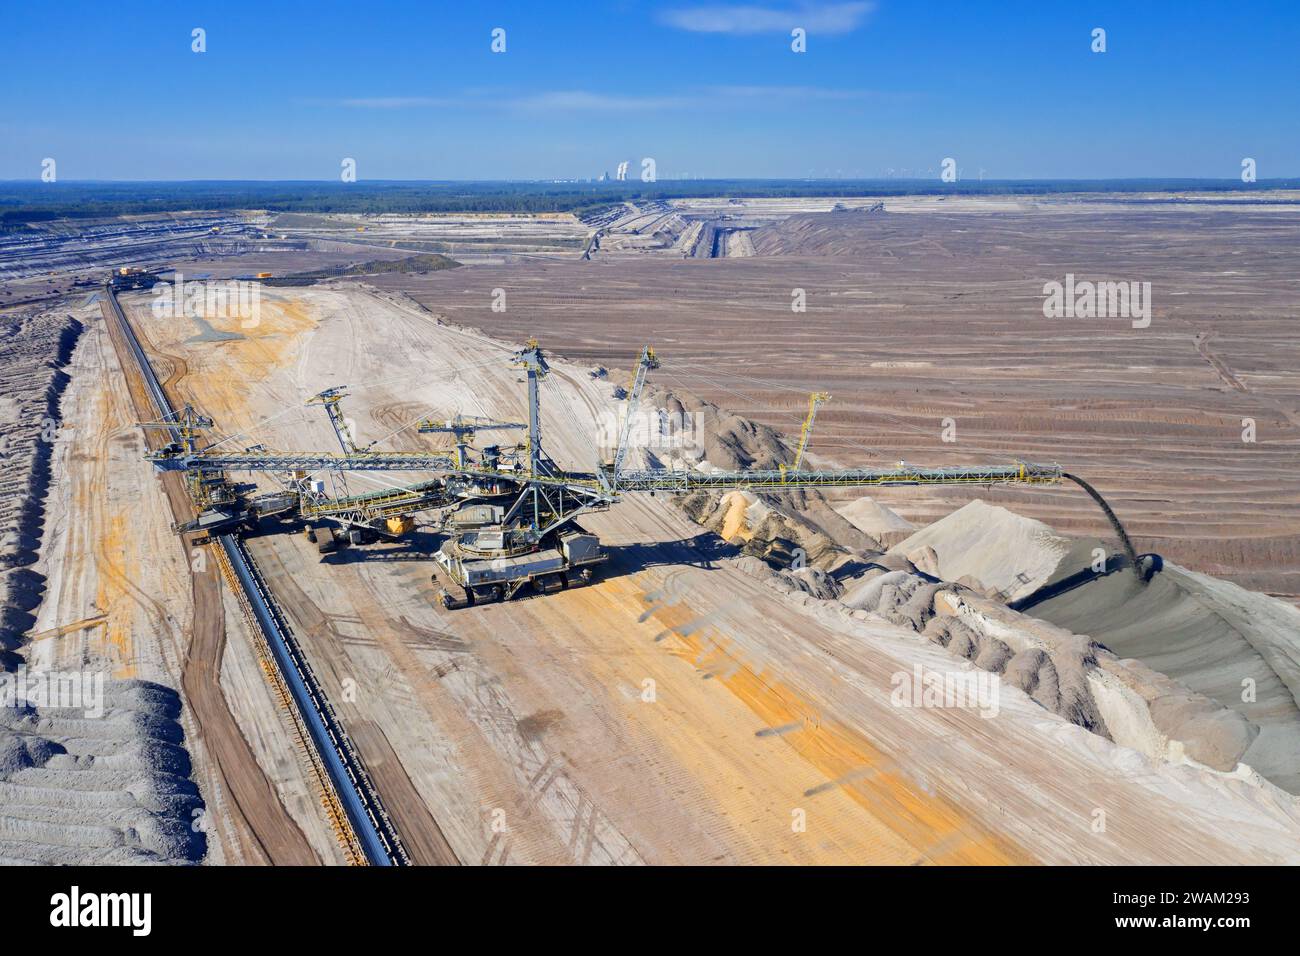 Carbone bruno estratto da un enorme escavatore a benna (BWE) presso la fossa di Nochten, miniera di lignite vicino a Weisswasser, Sassonia, Germania orientale Foto Stock